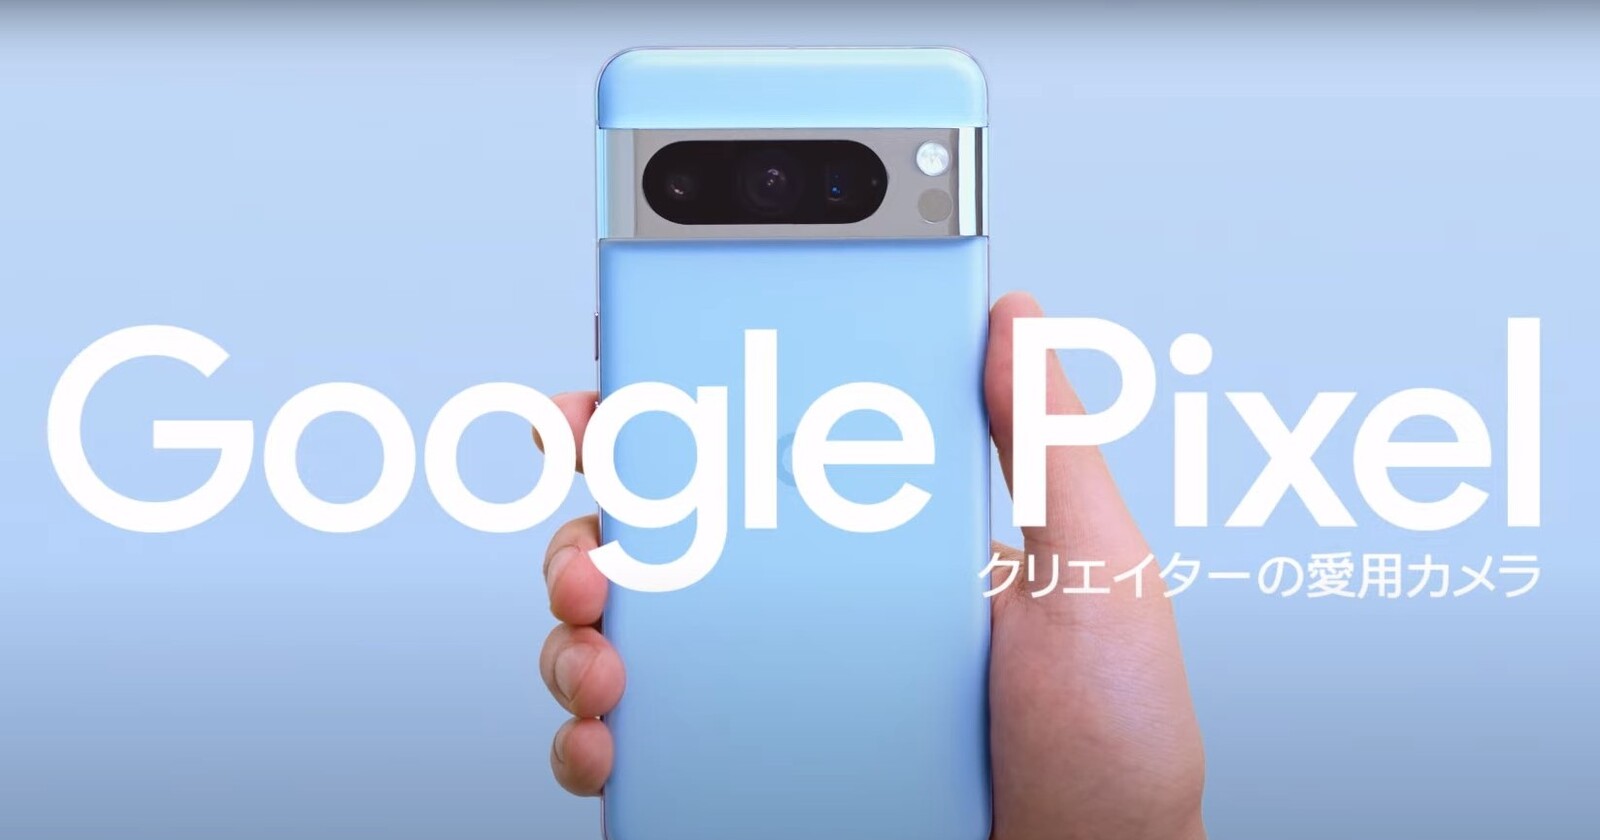 Kanta Mizutamari raves about Pixel 8 Pro video quality in latest Google Japan Ad